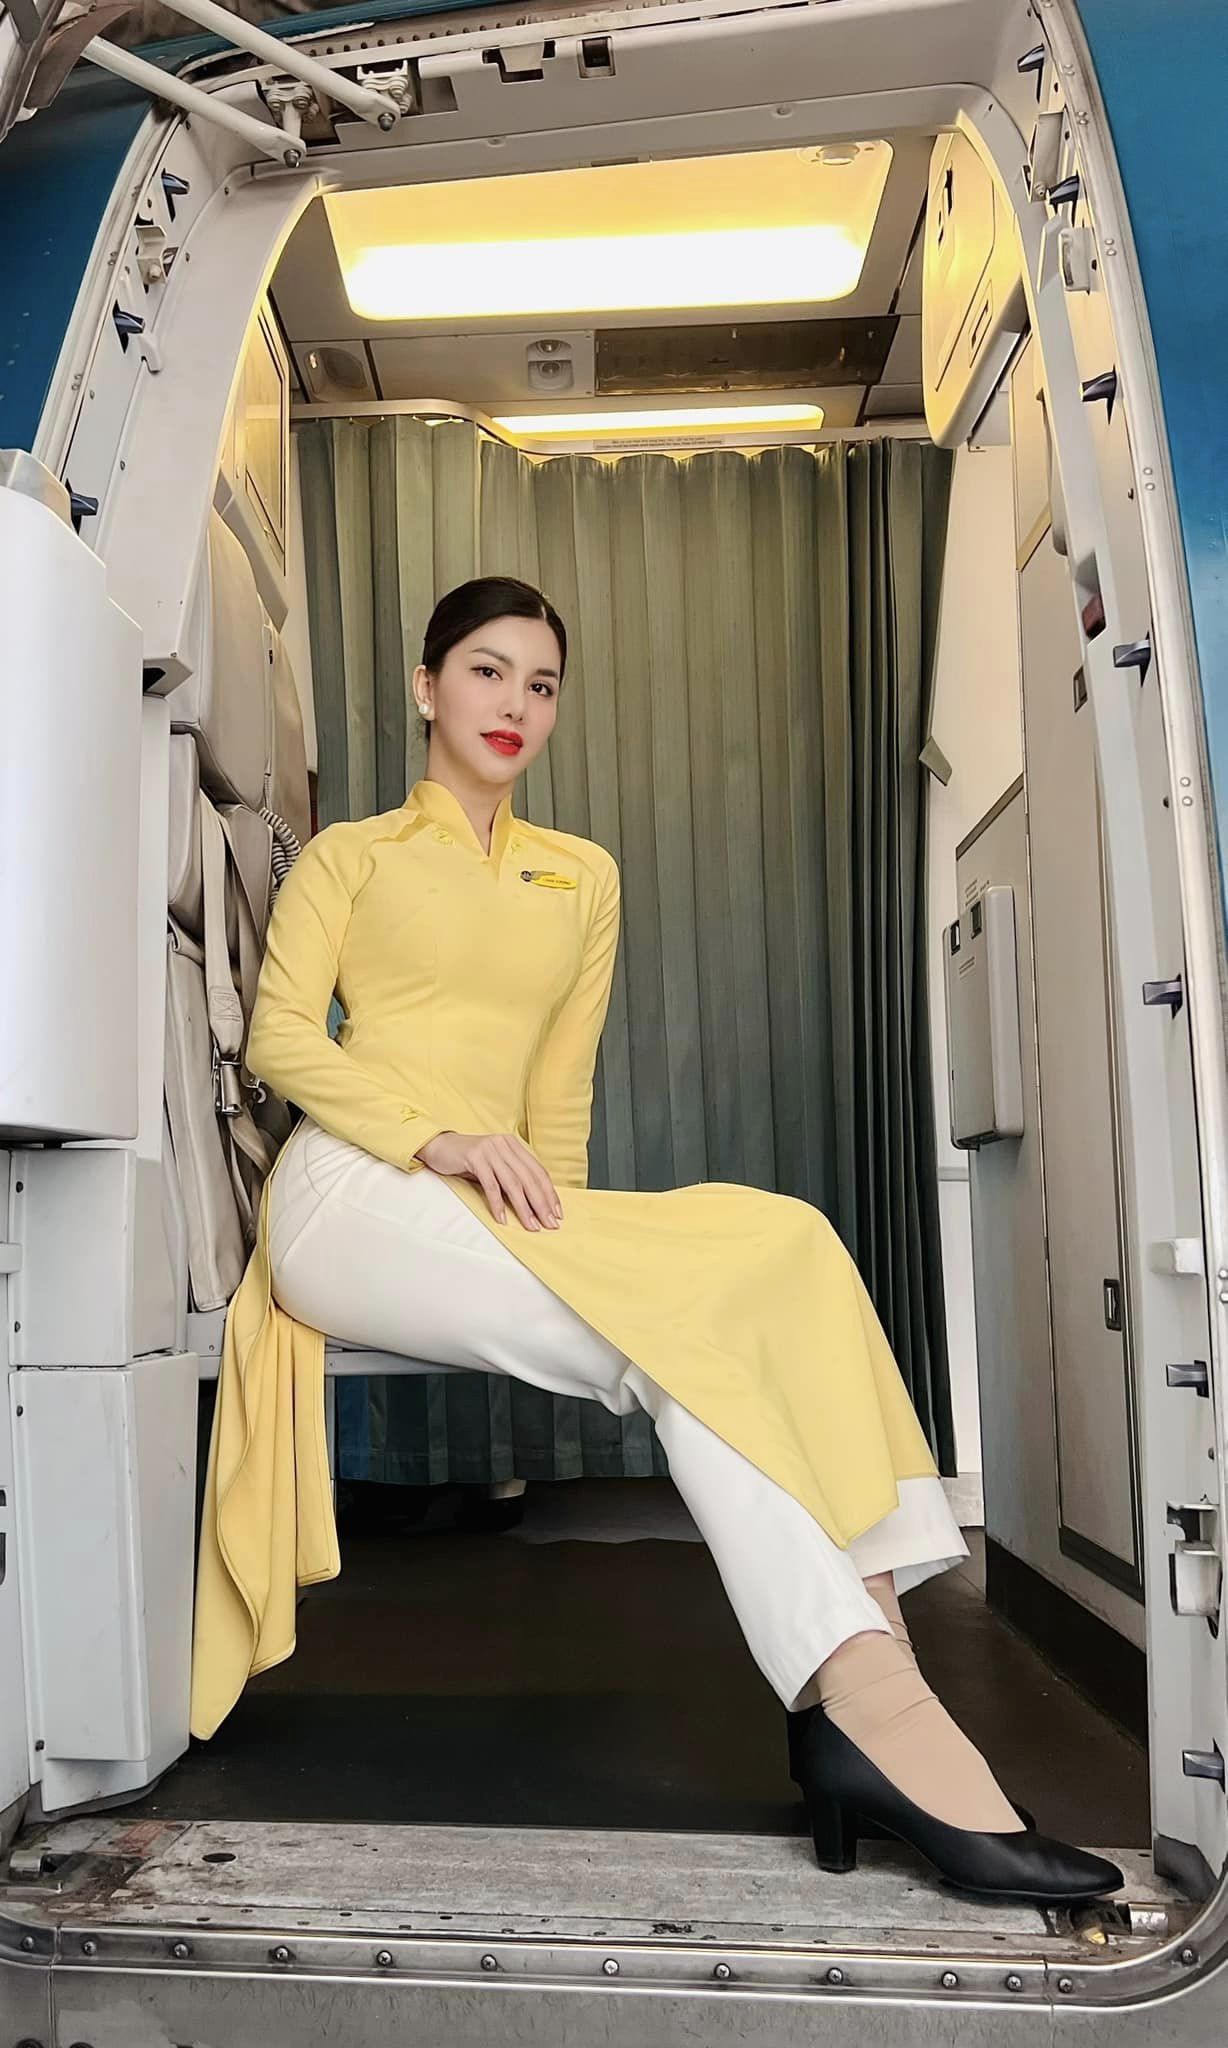 'Hoa hậu hàng không' duyên dáng trong trang phục tiếp viên trưởng - ảnh 1